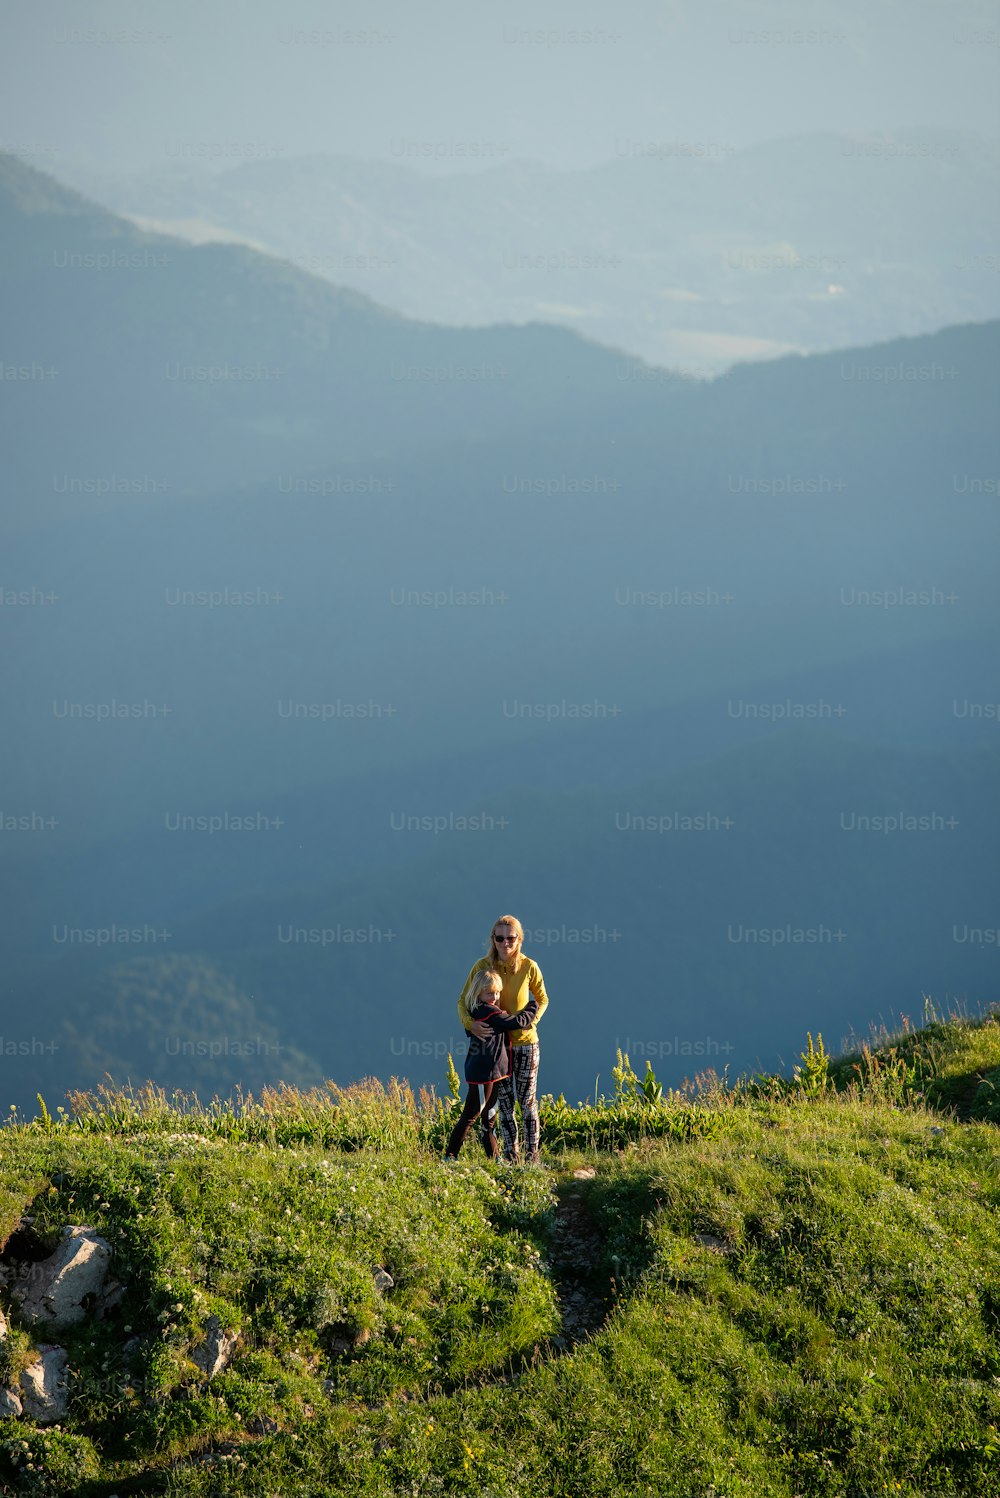 Un homme debout au sommet d’une colline verdoyante